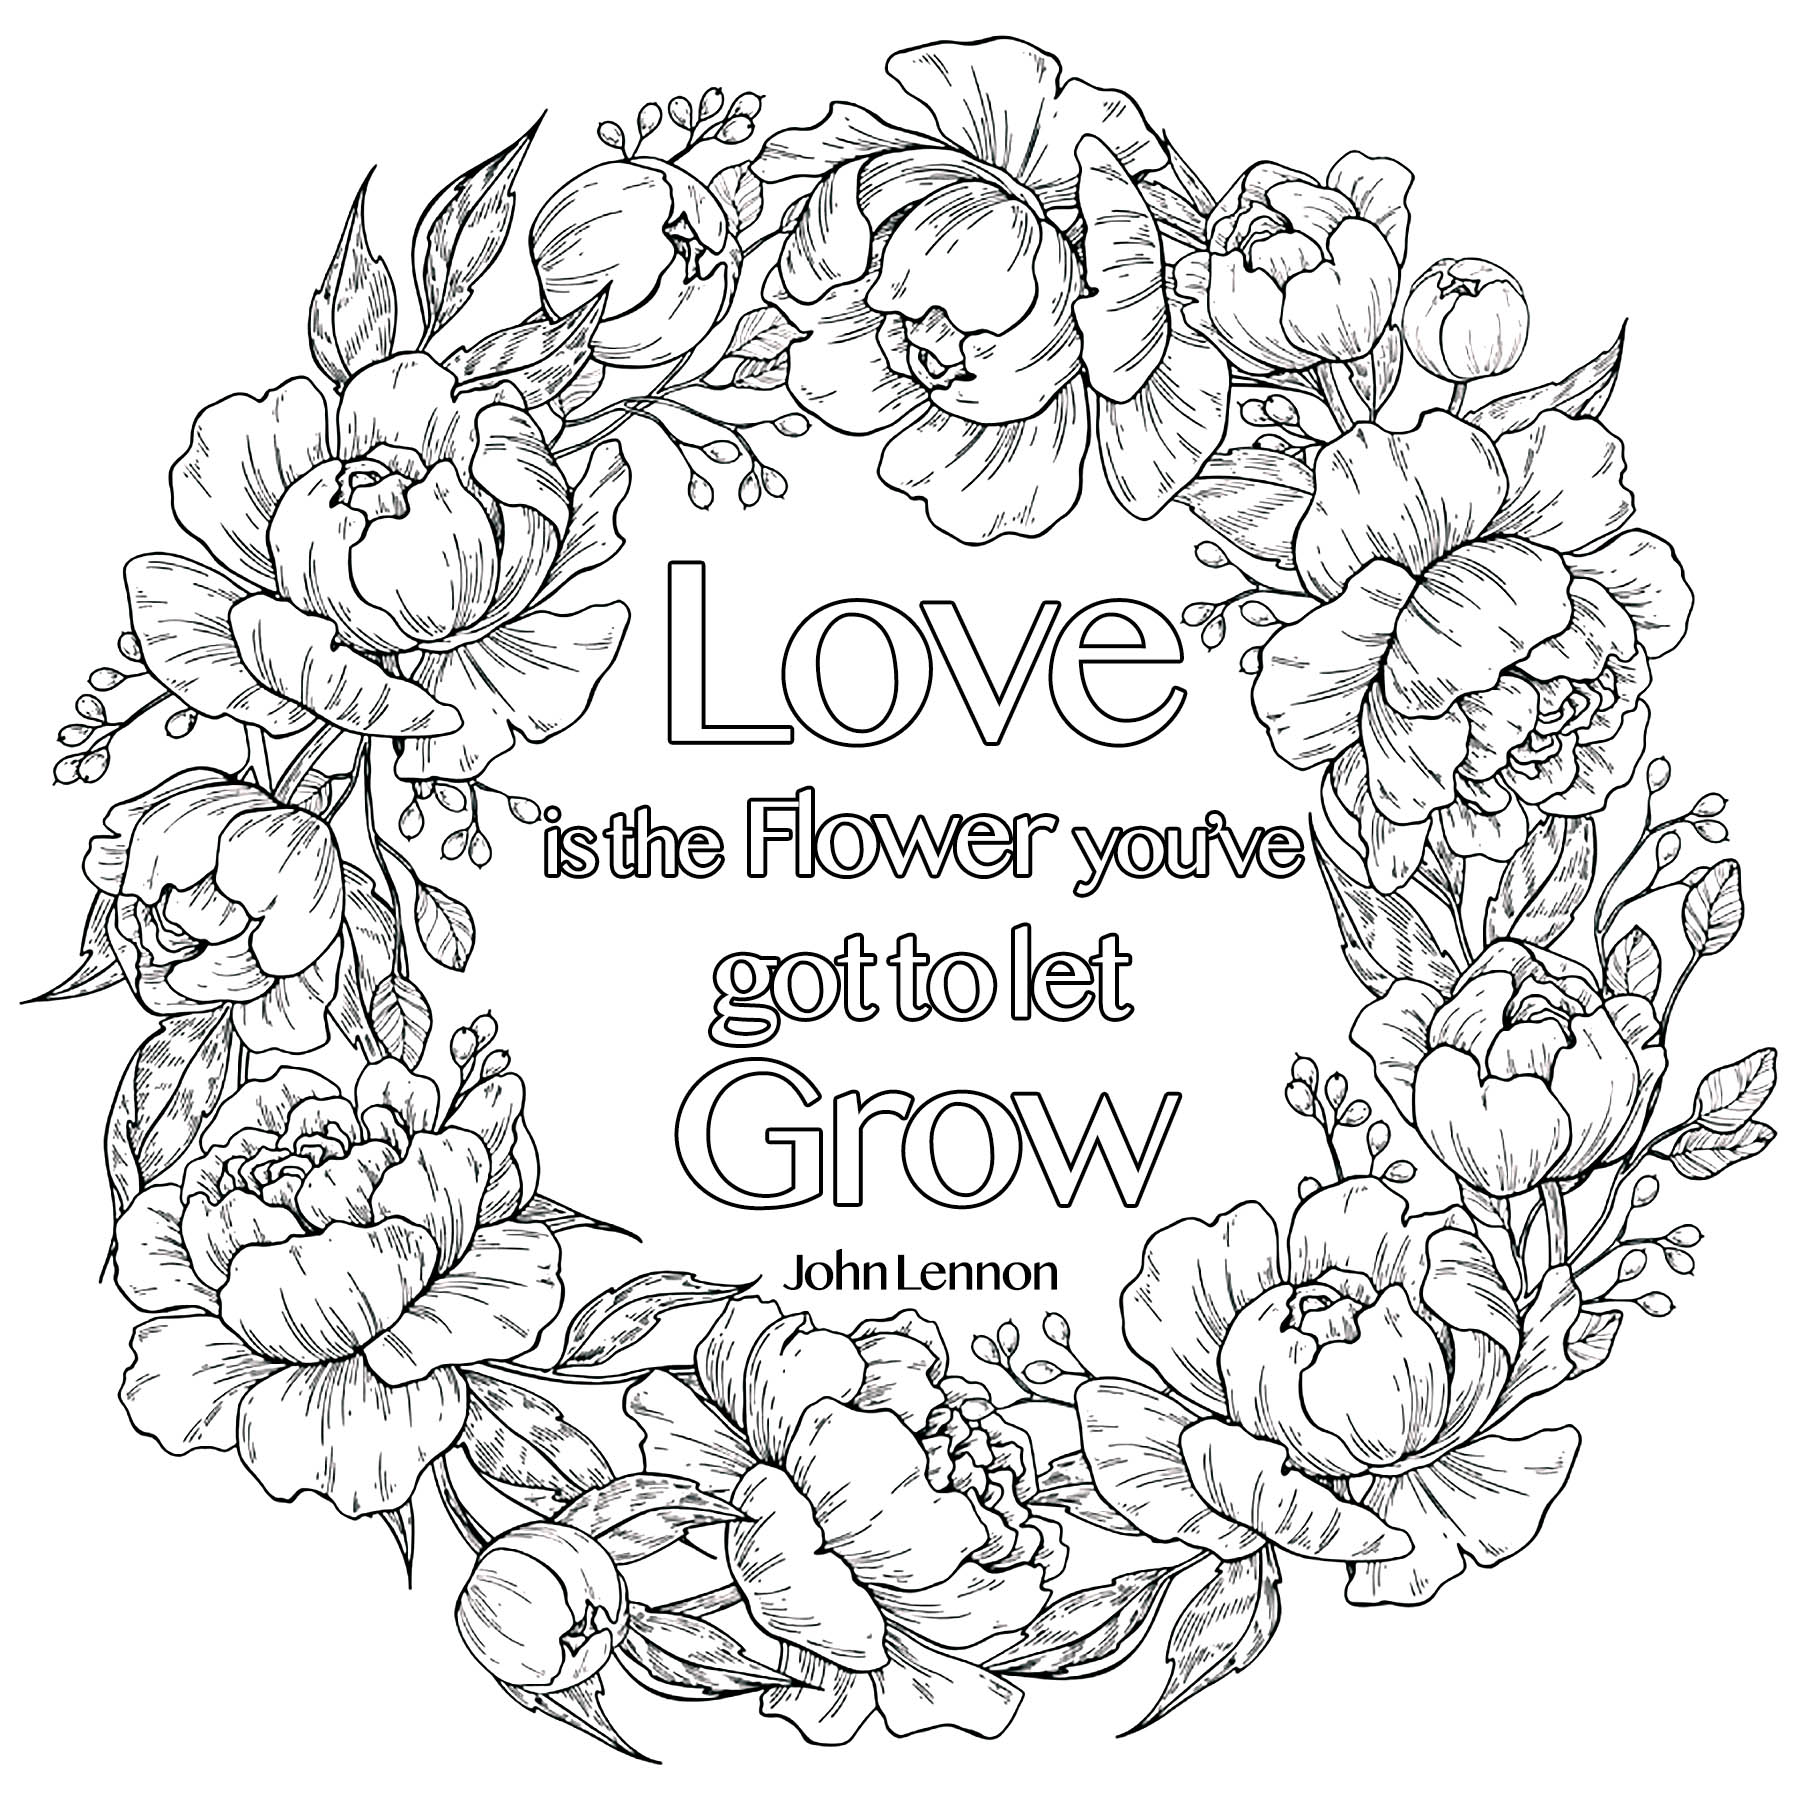 Love is the Flower you've got to let grow, John Lennon (con una corona de flores)